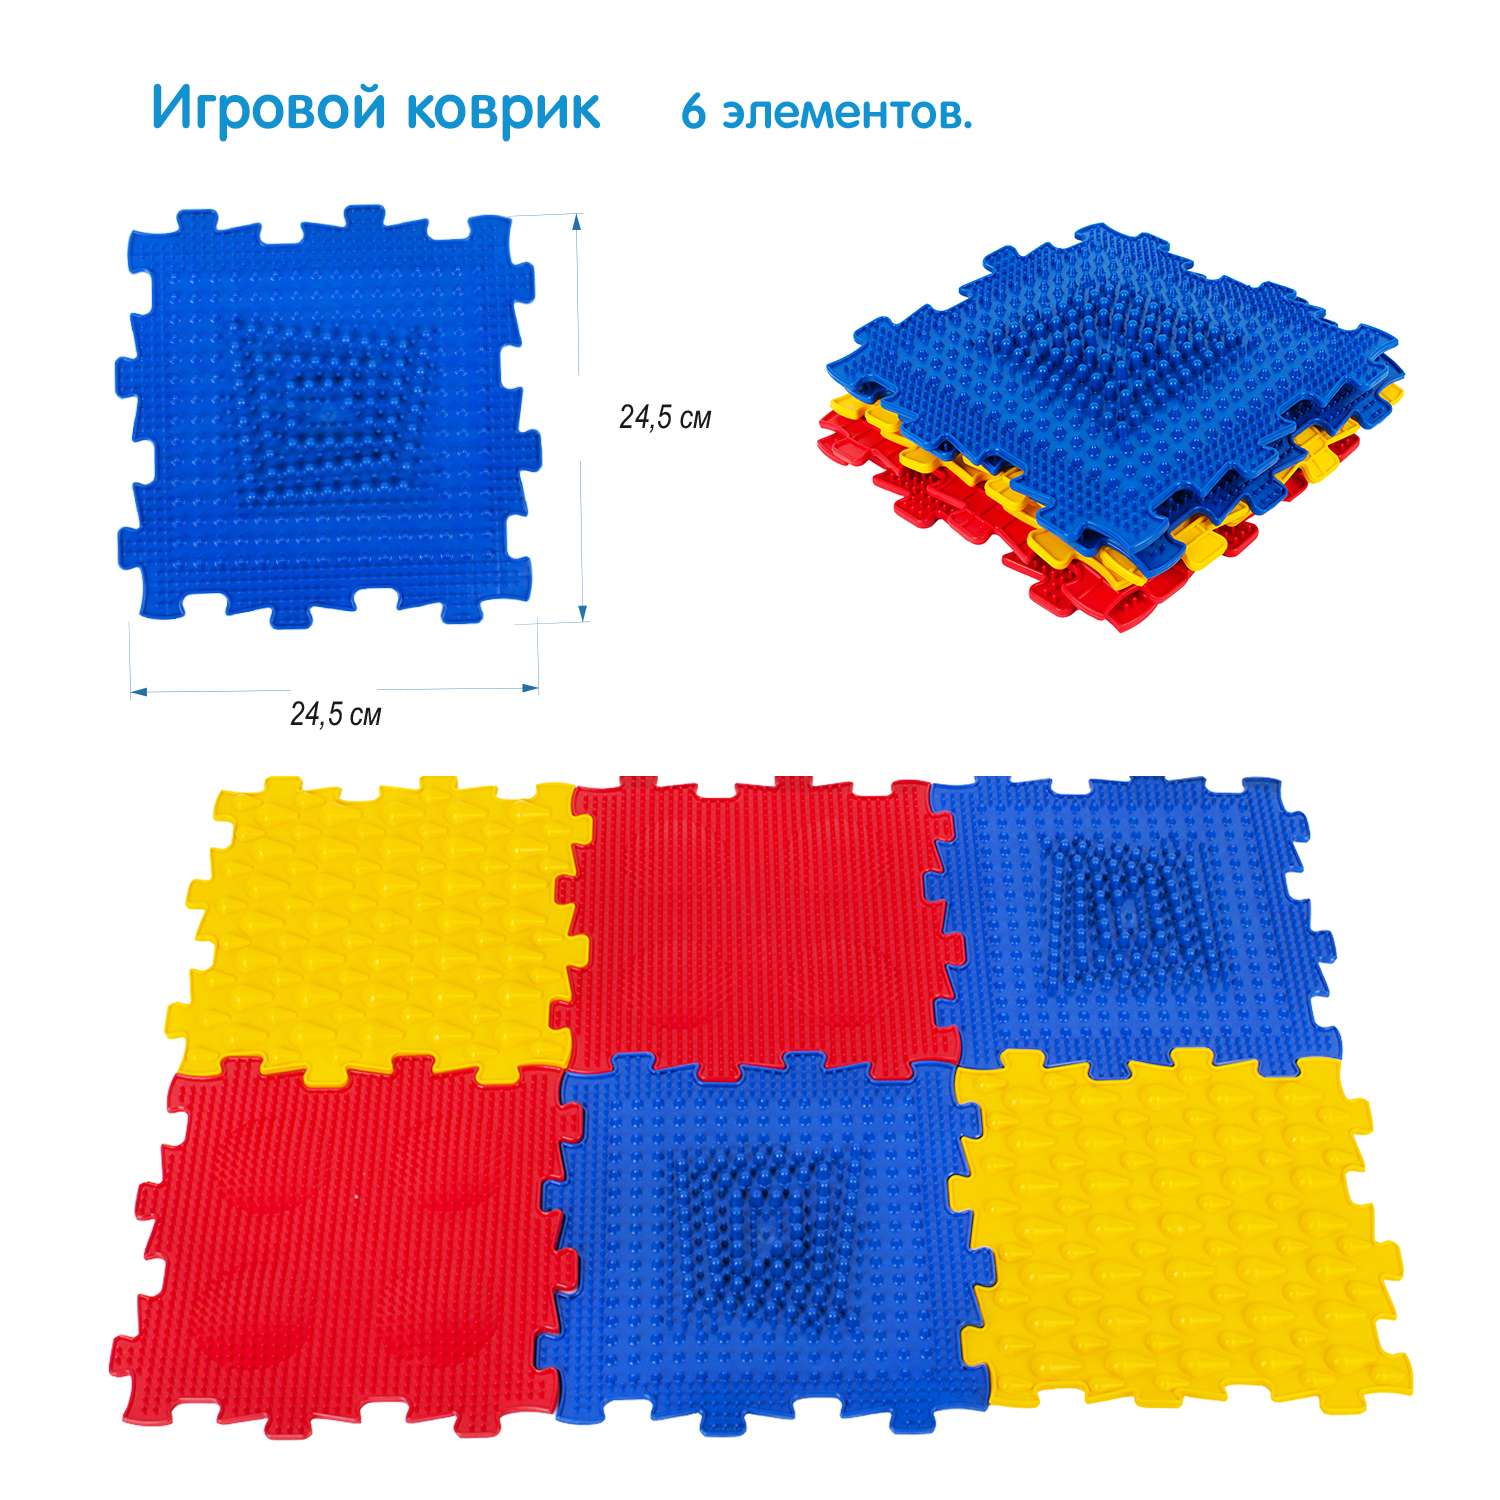 Игровой коврик СТРОМ модульный 6 элементов - фото 1